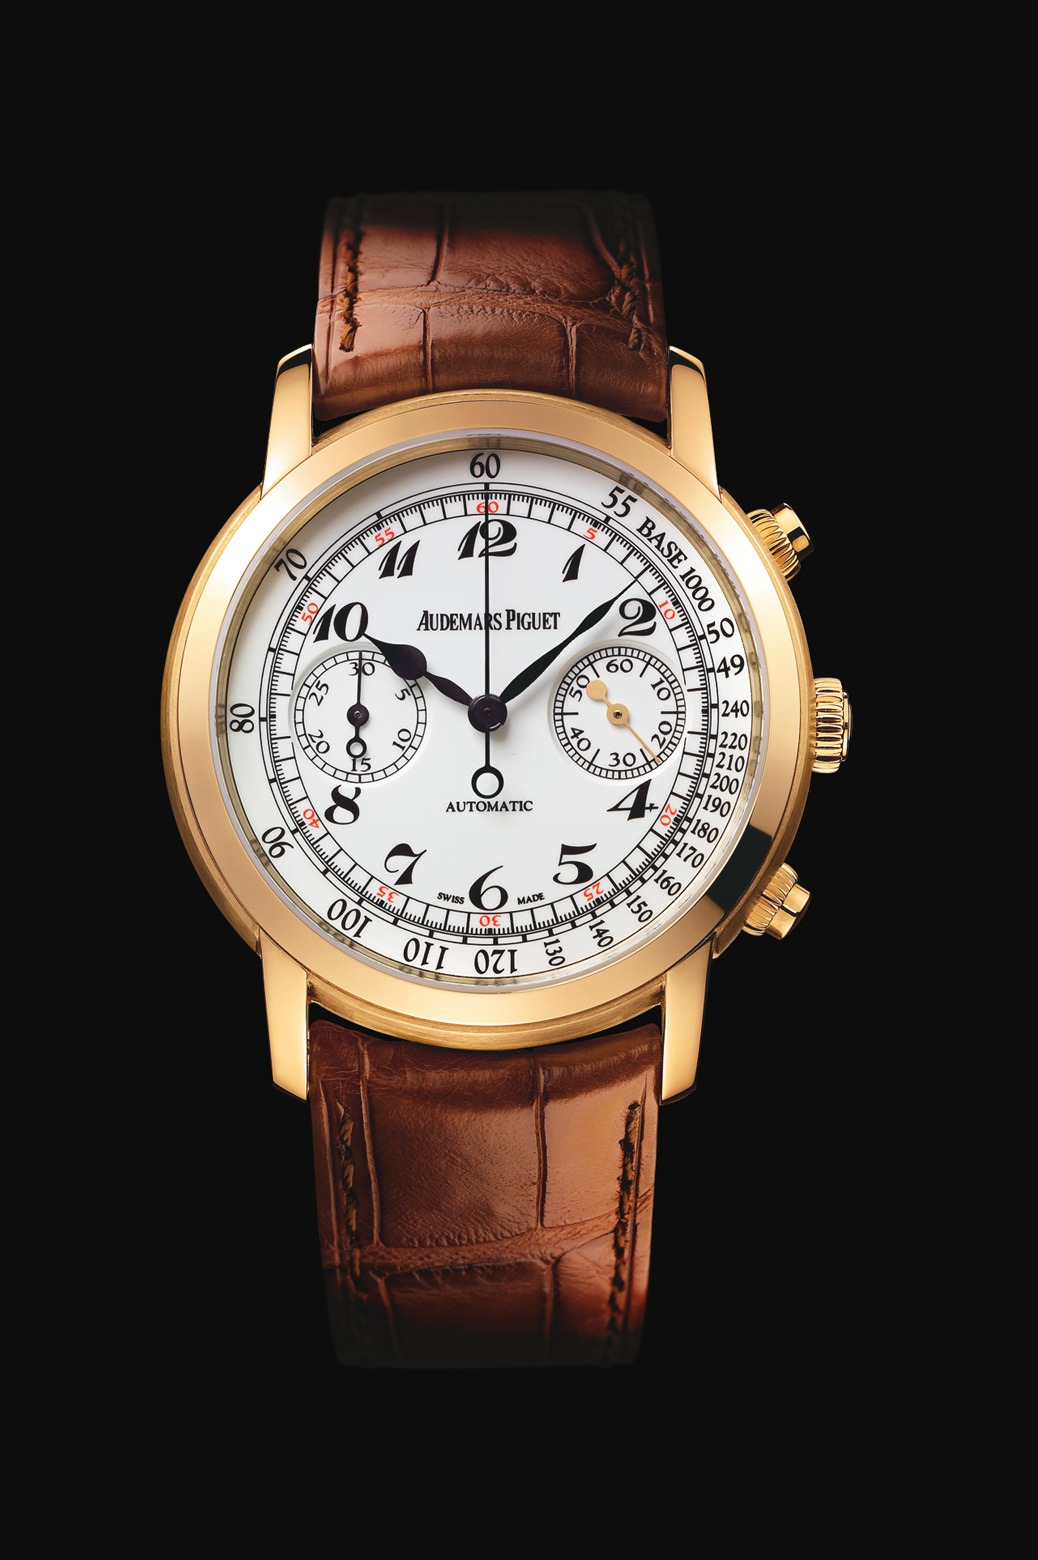 Audemars Piguet Jules Audemars Chronograph Pink Gold watch REF: 26100OR.OO.D088CR.01